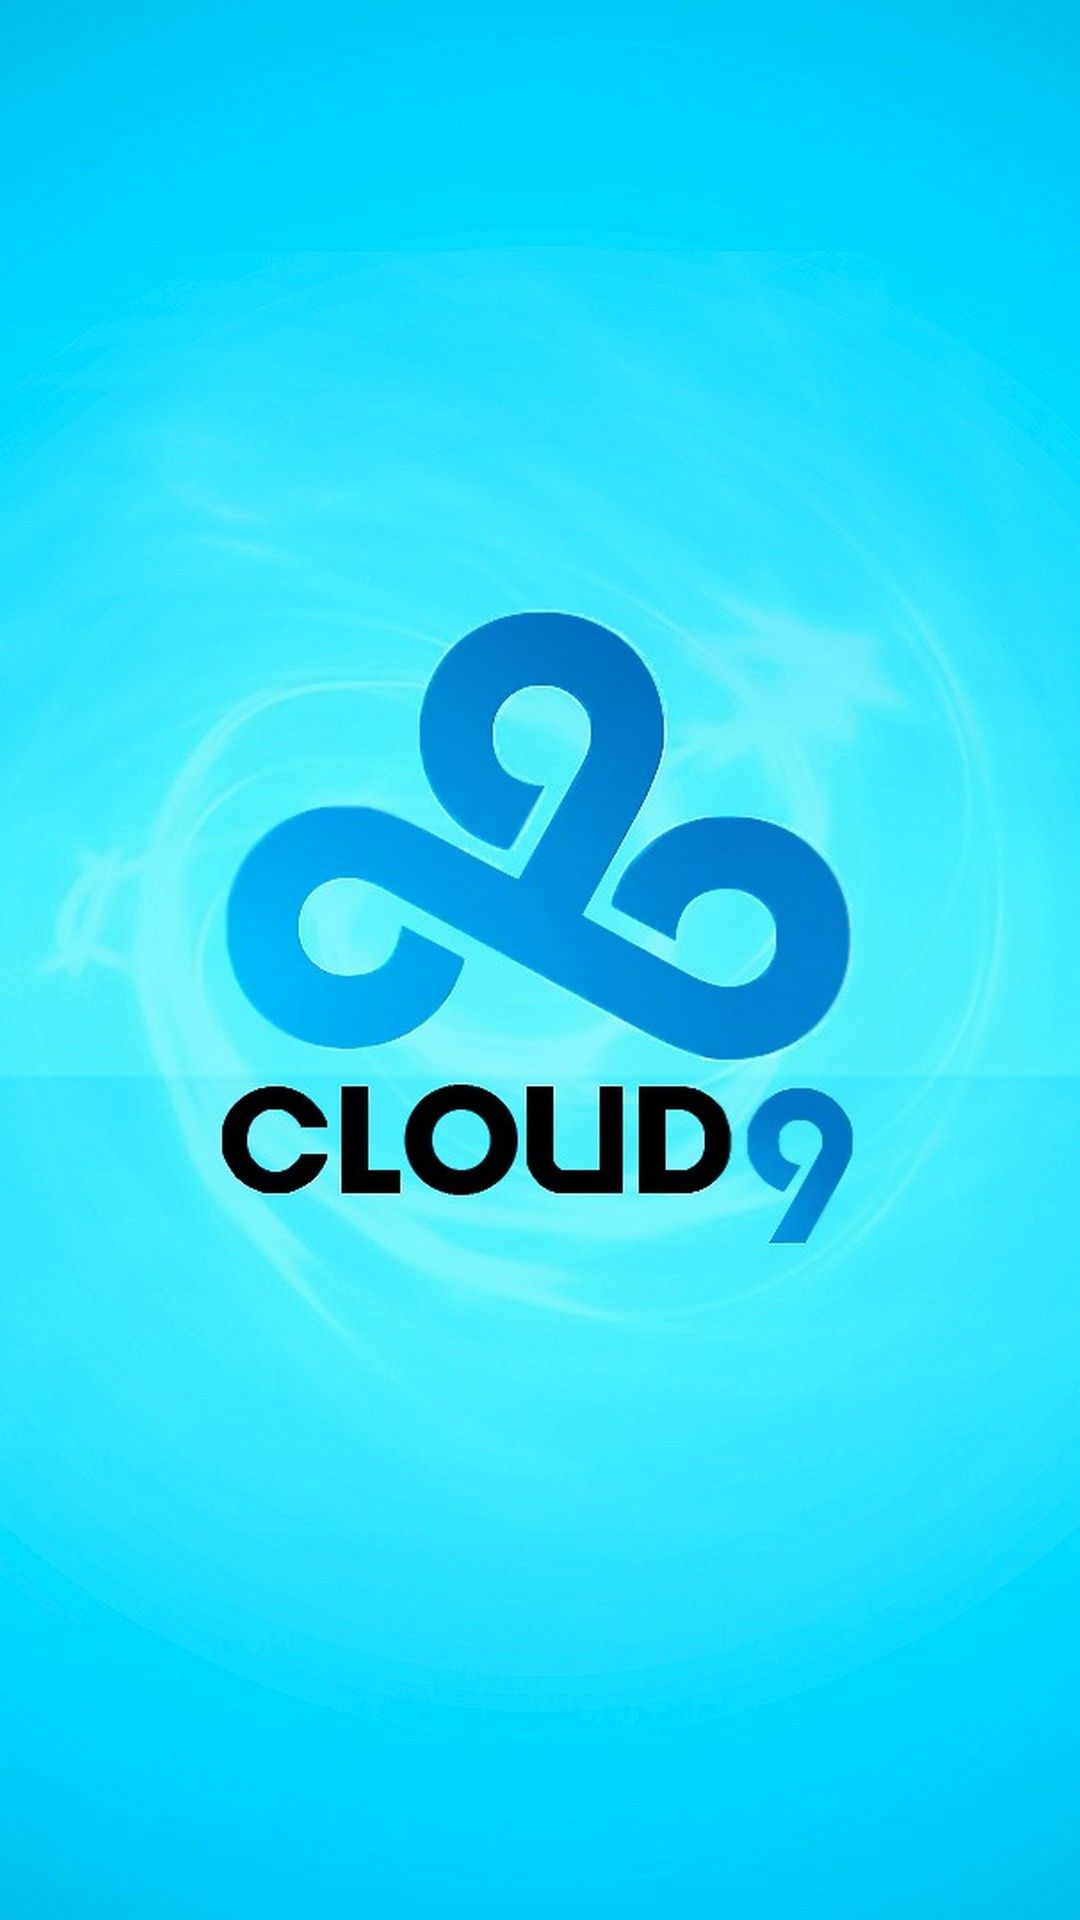 Transparent Cloud 9 Logo - HD Wallpaper 